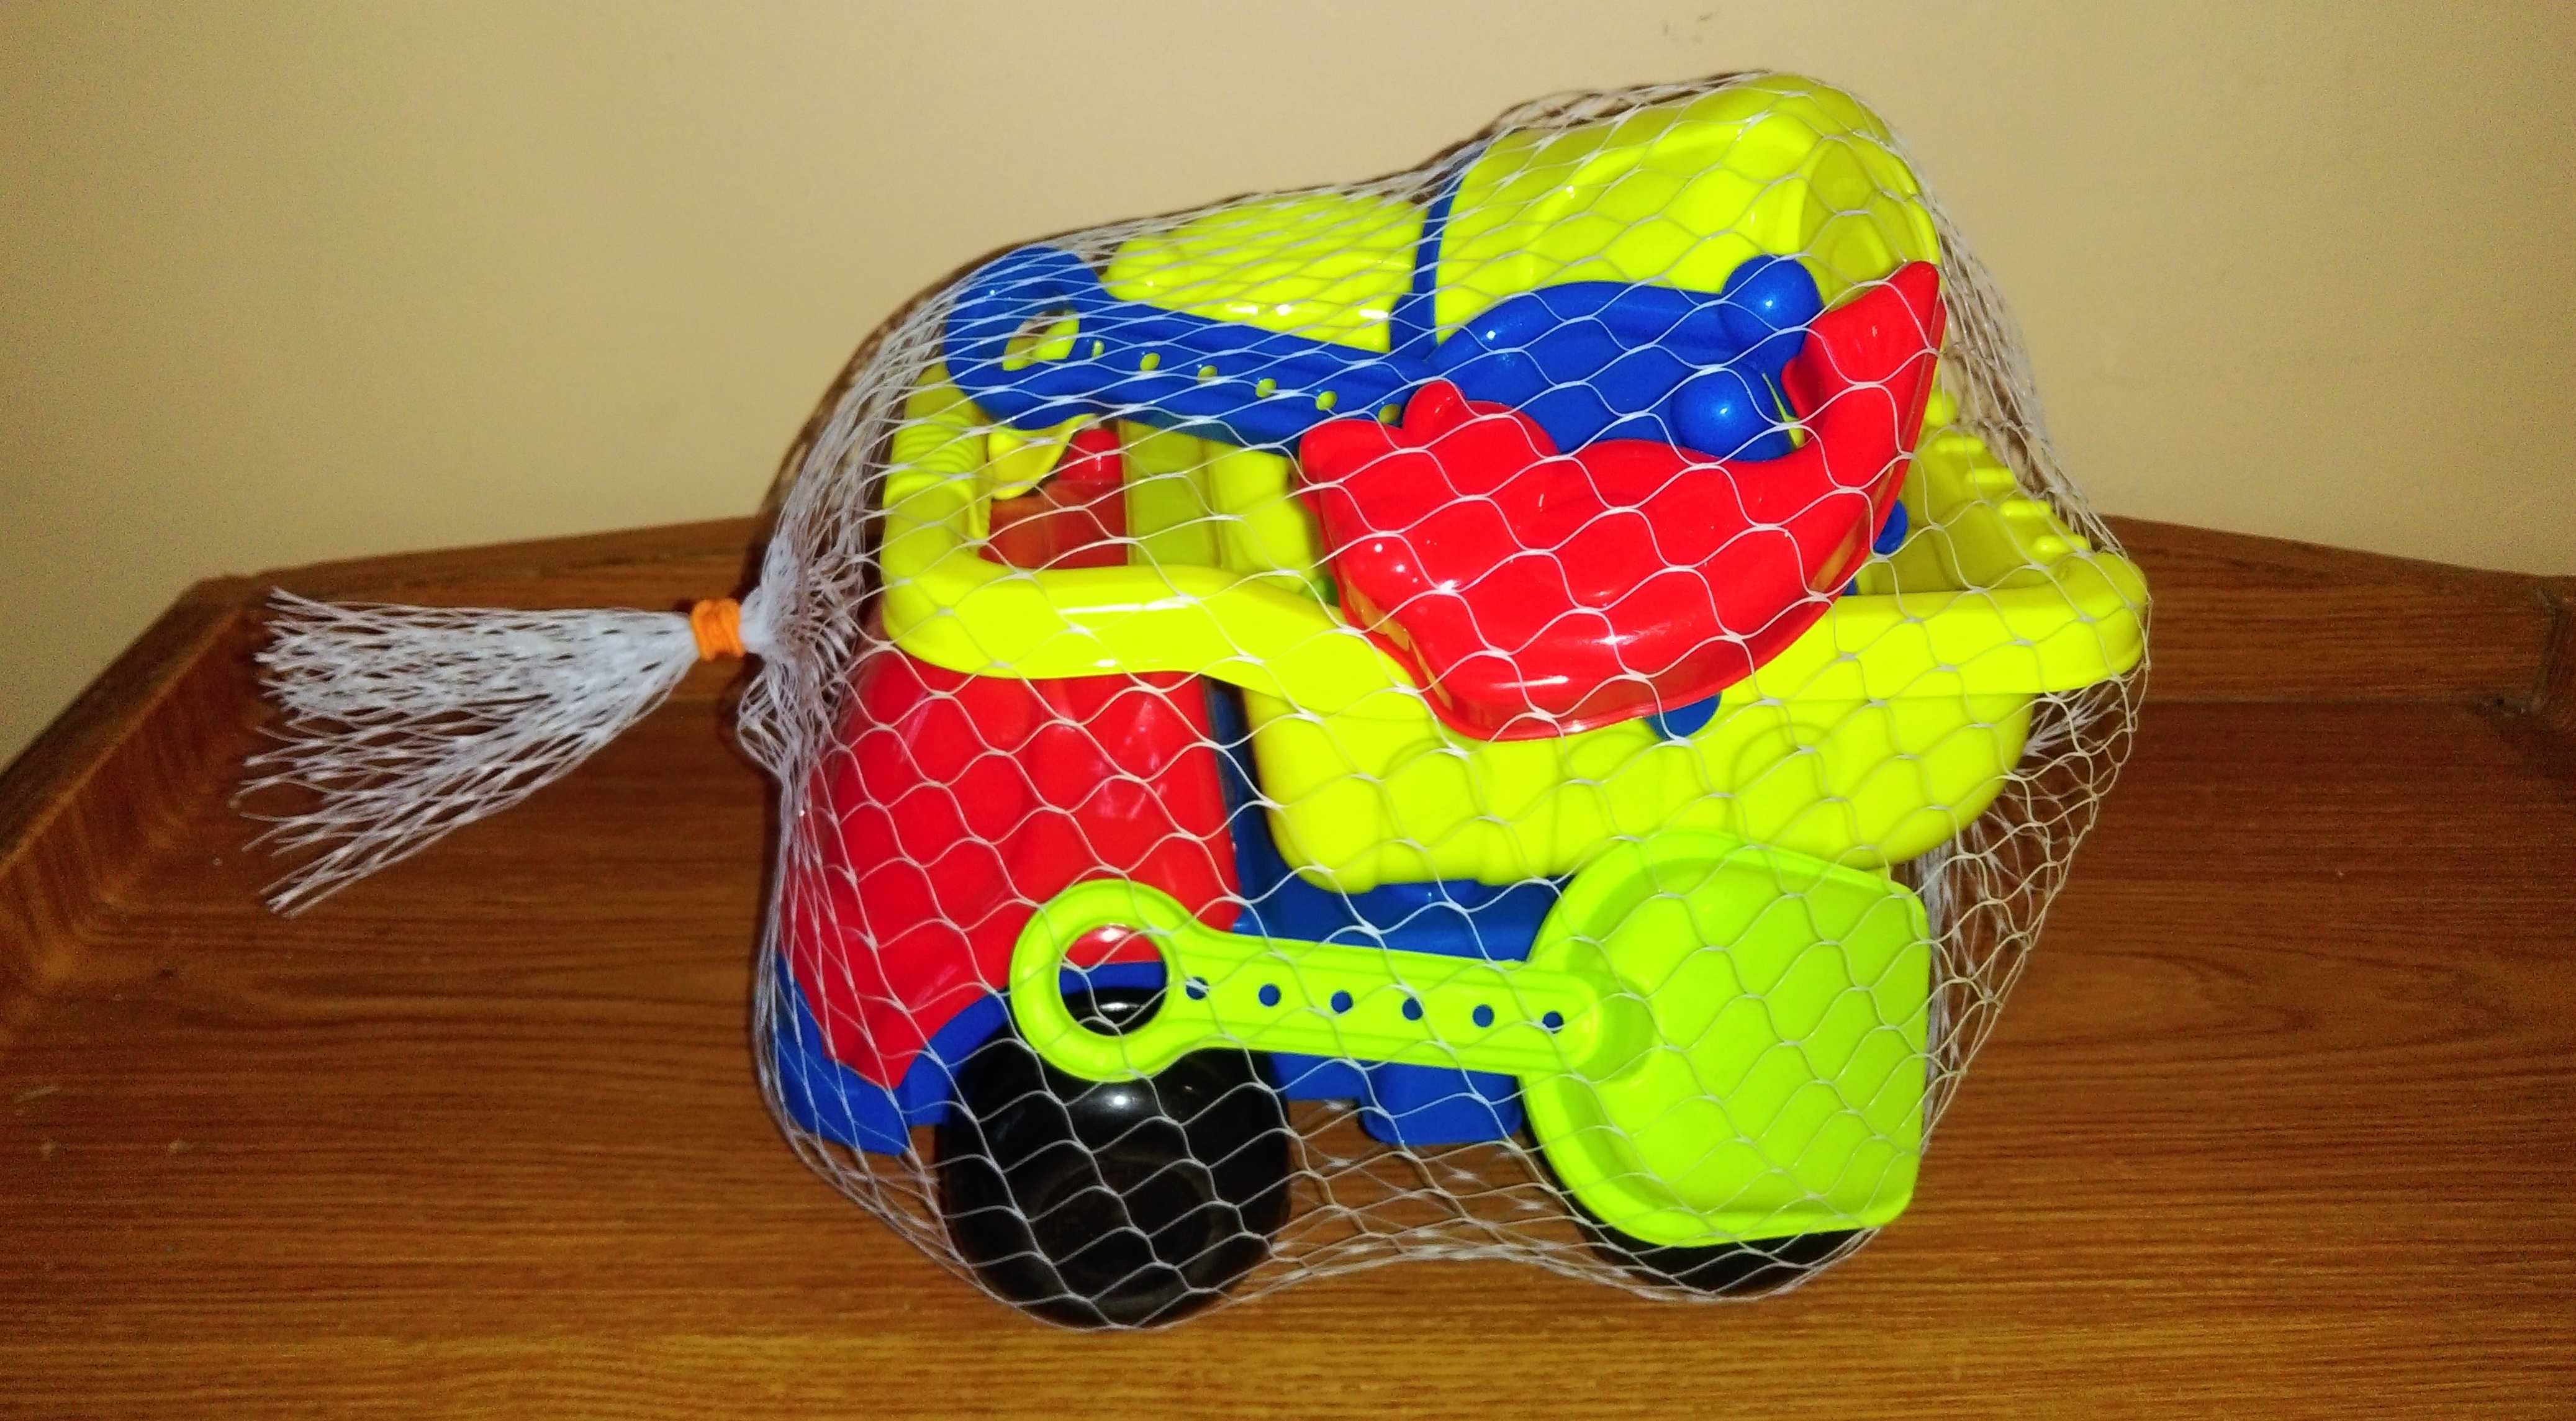 Zabawka dla dzieci samochód wywrotka + zestaw 8 elementów do piasku